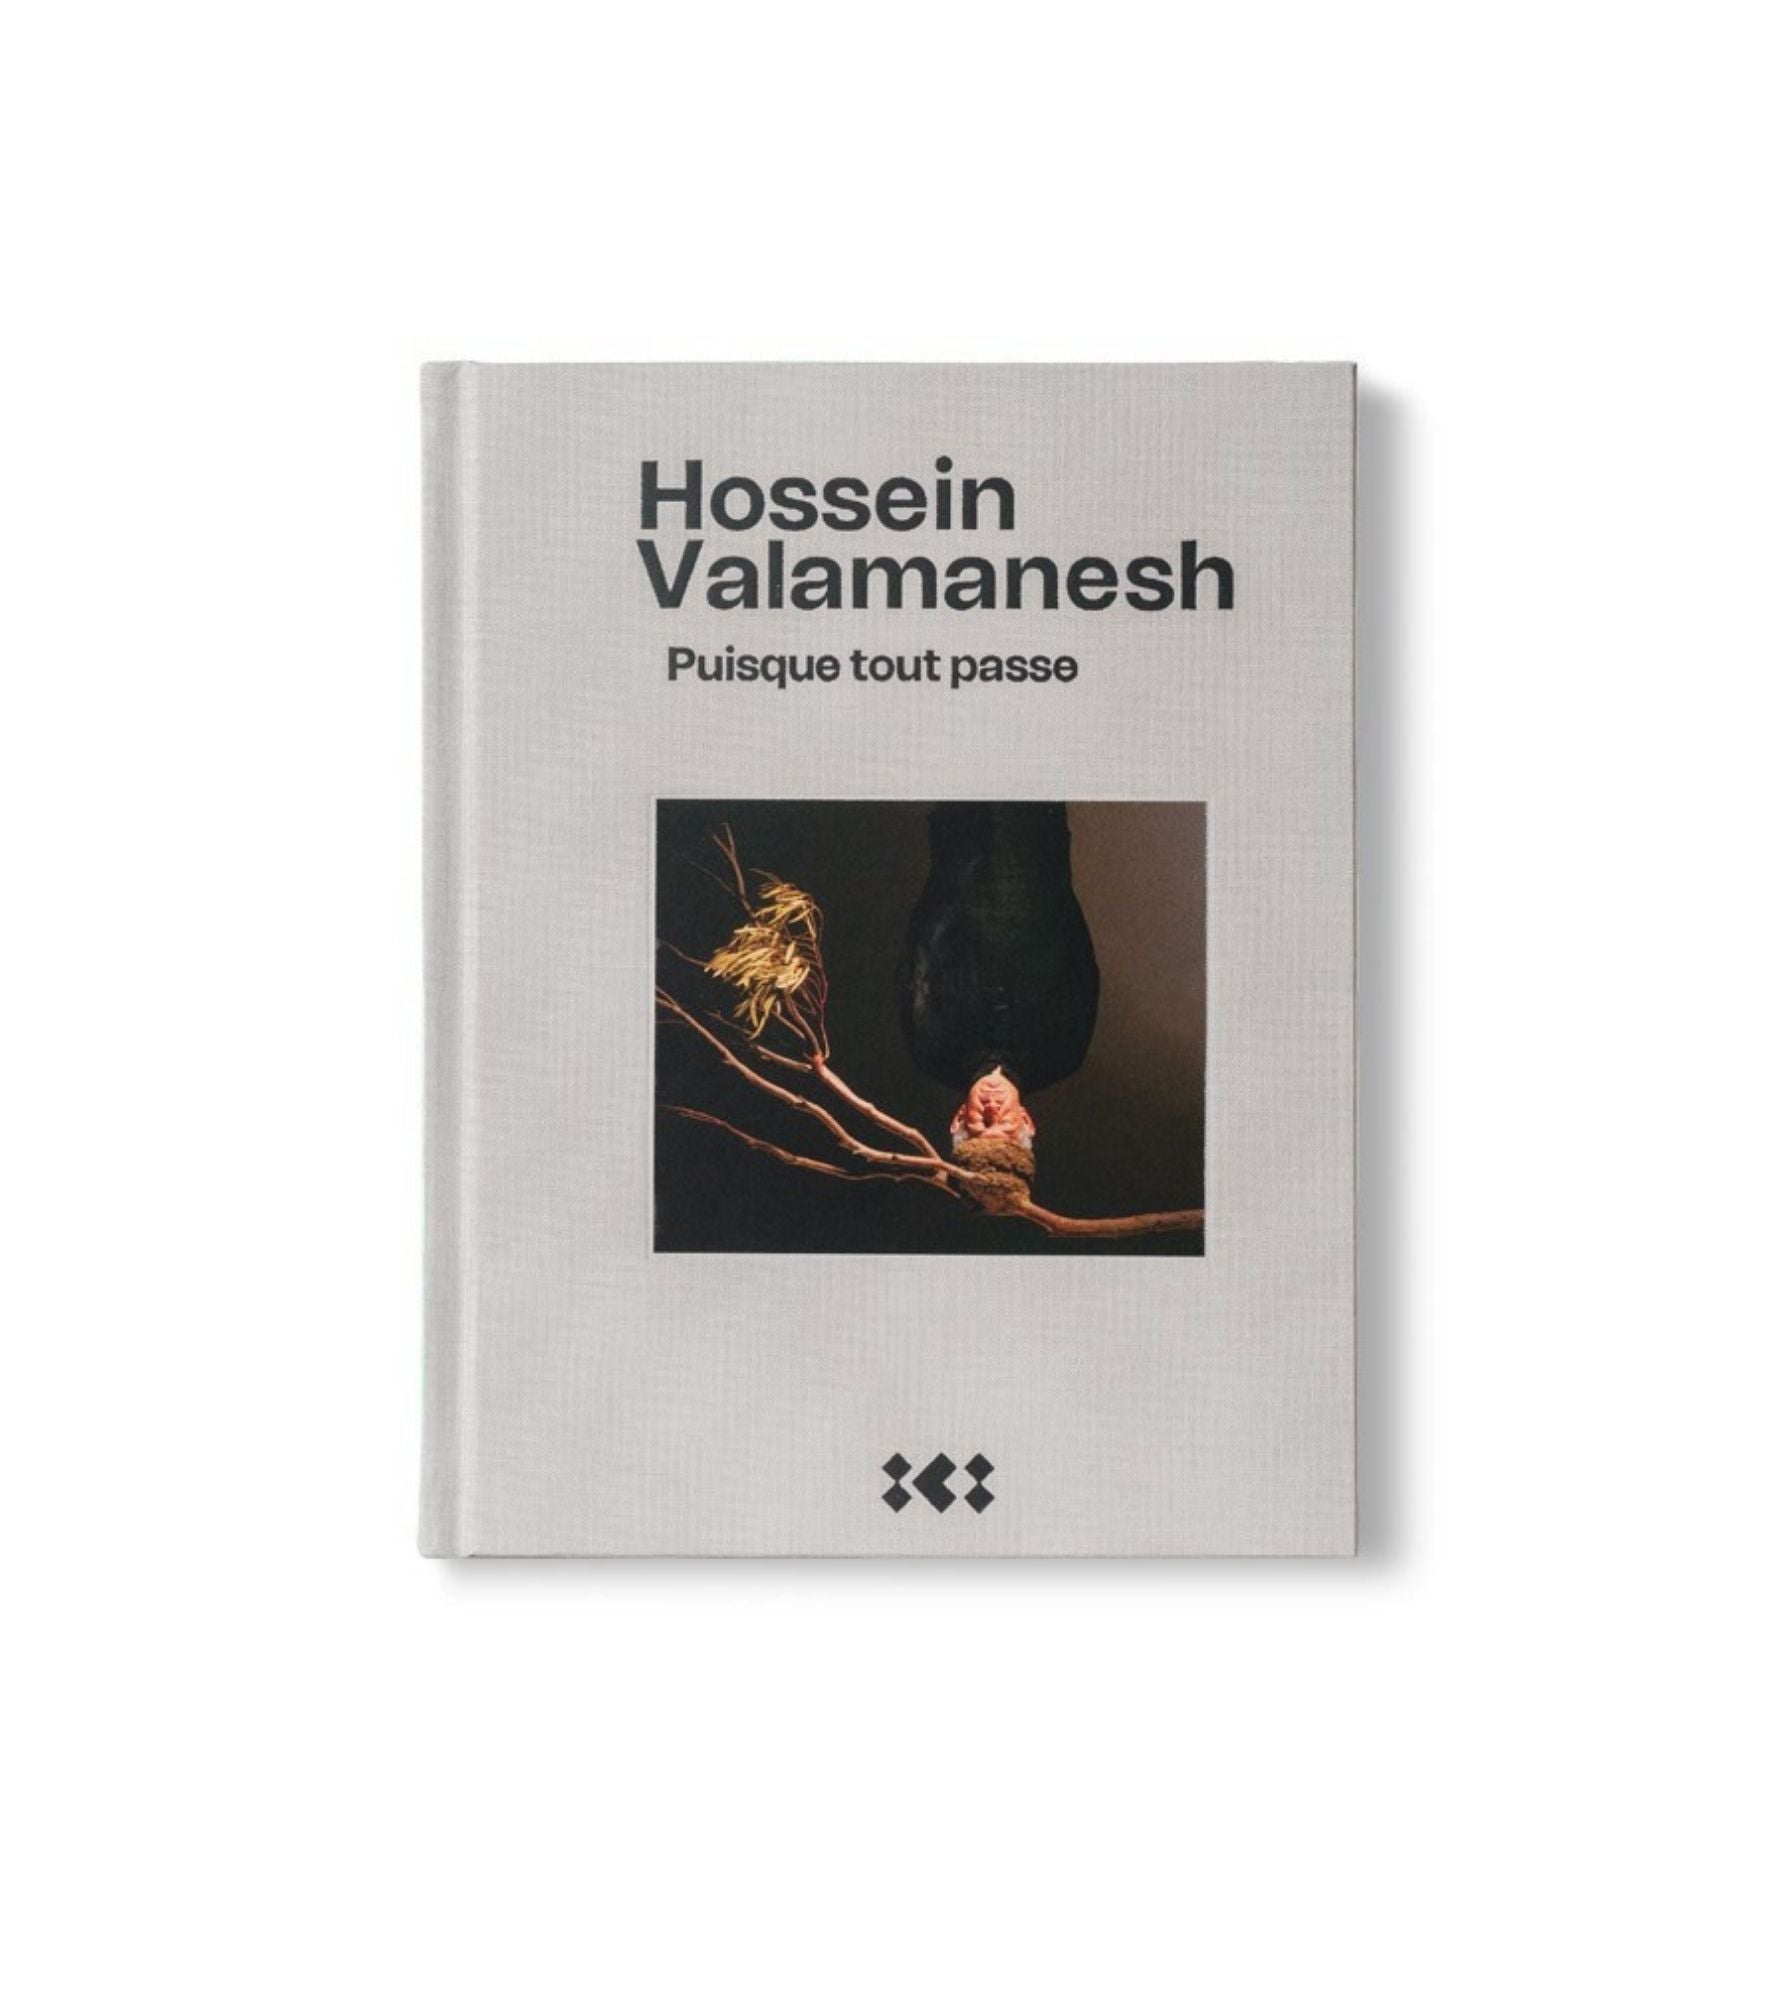 Hossein Valamanesh Puisque tout passe